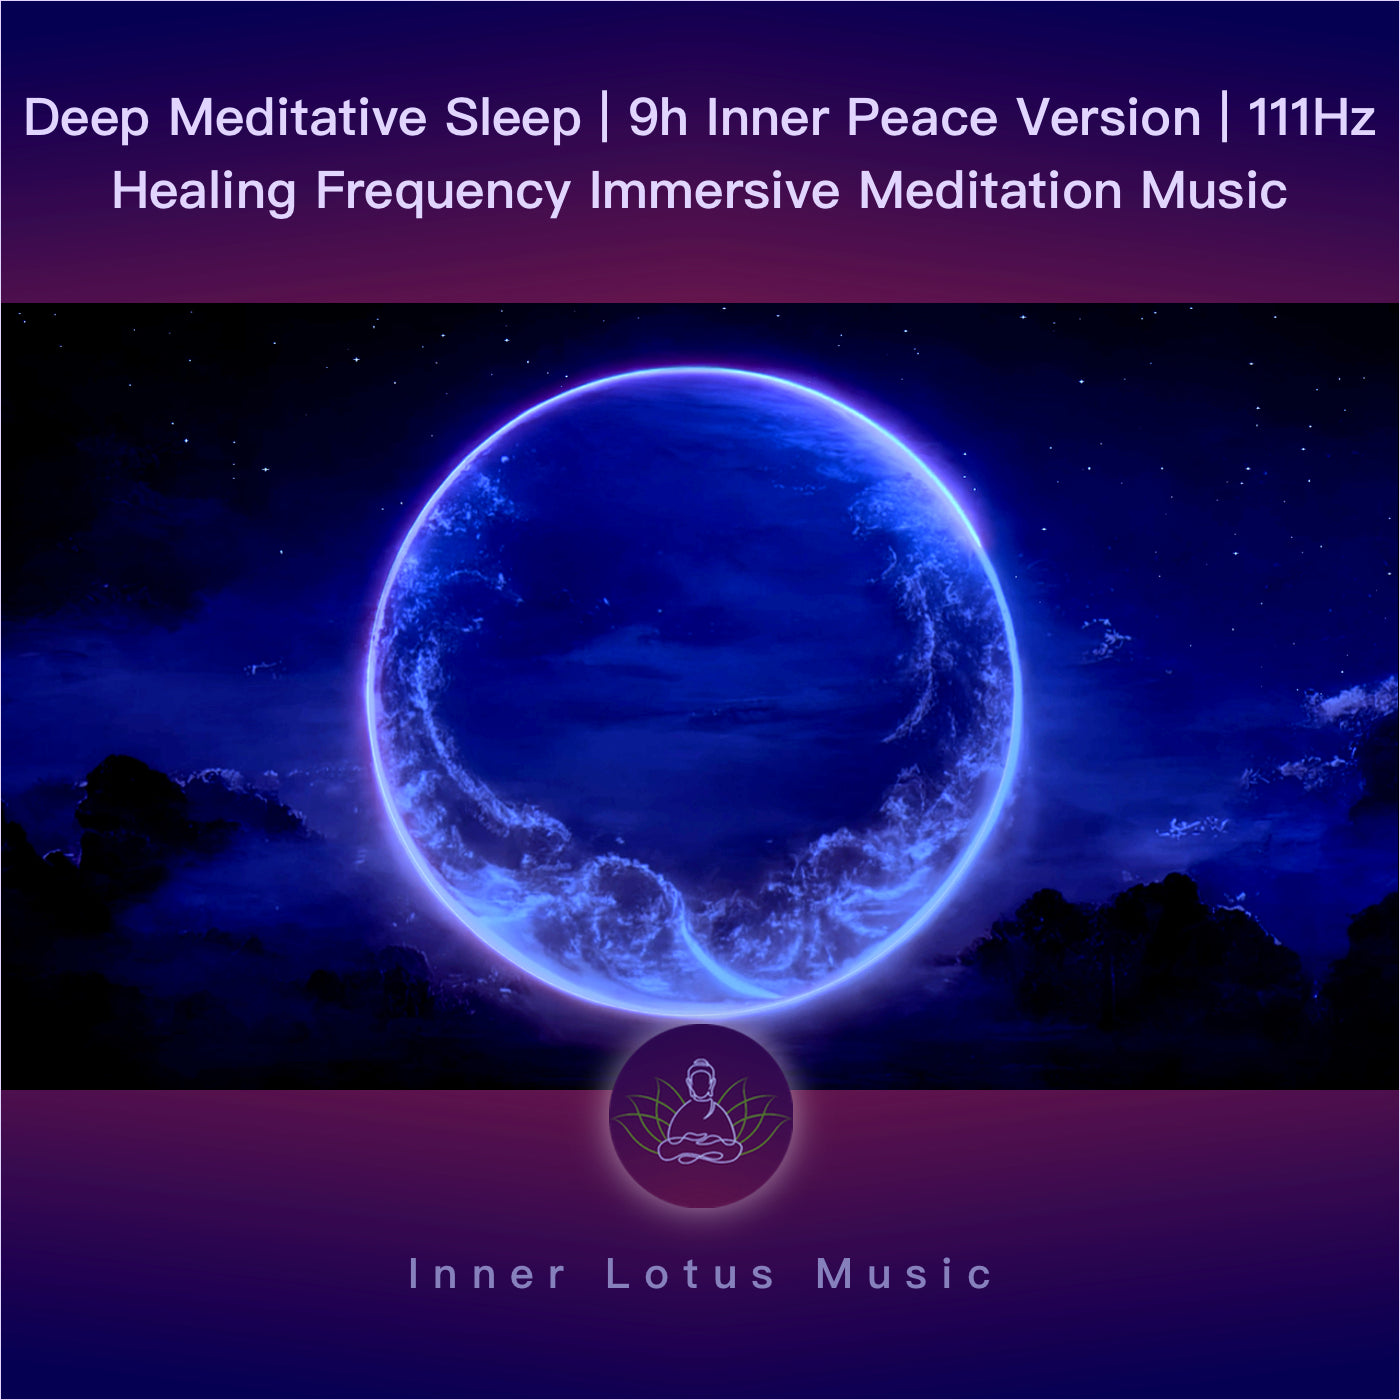 Sommeil Méditatif Profond | 9h Paix Intérieure | Immersion Guérissante 111 Hz Méditation & Dormir